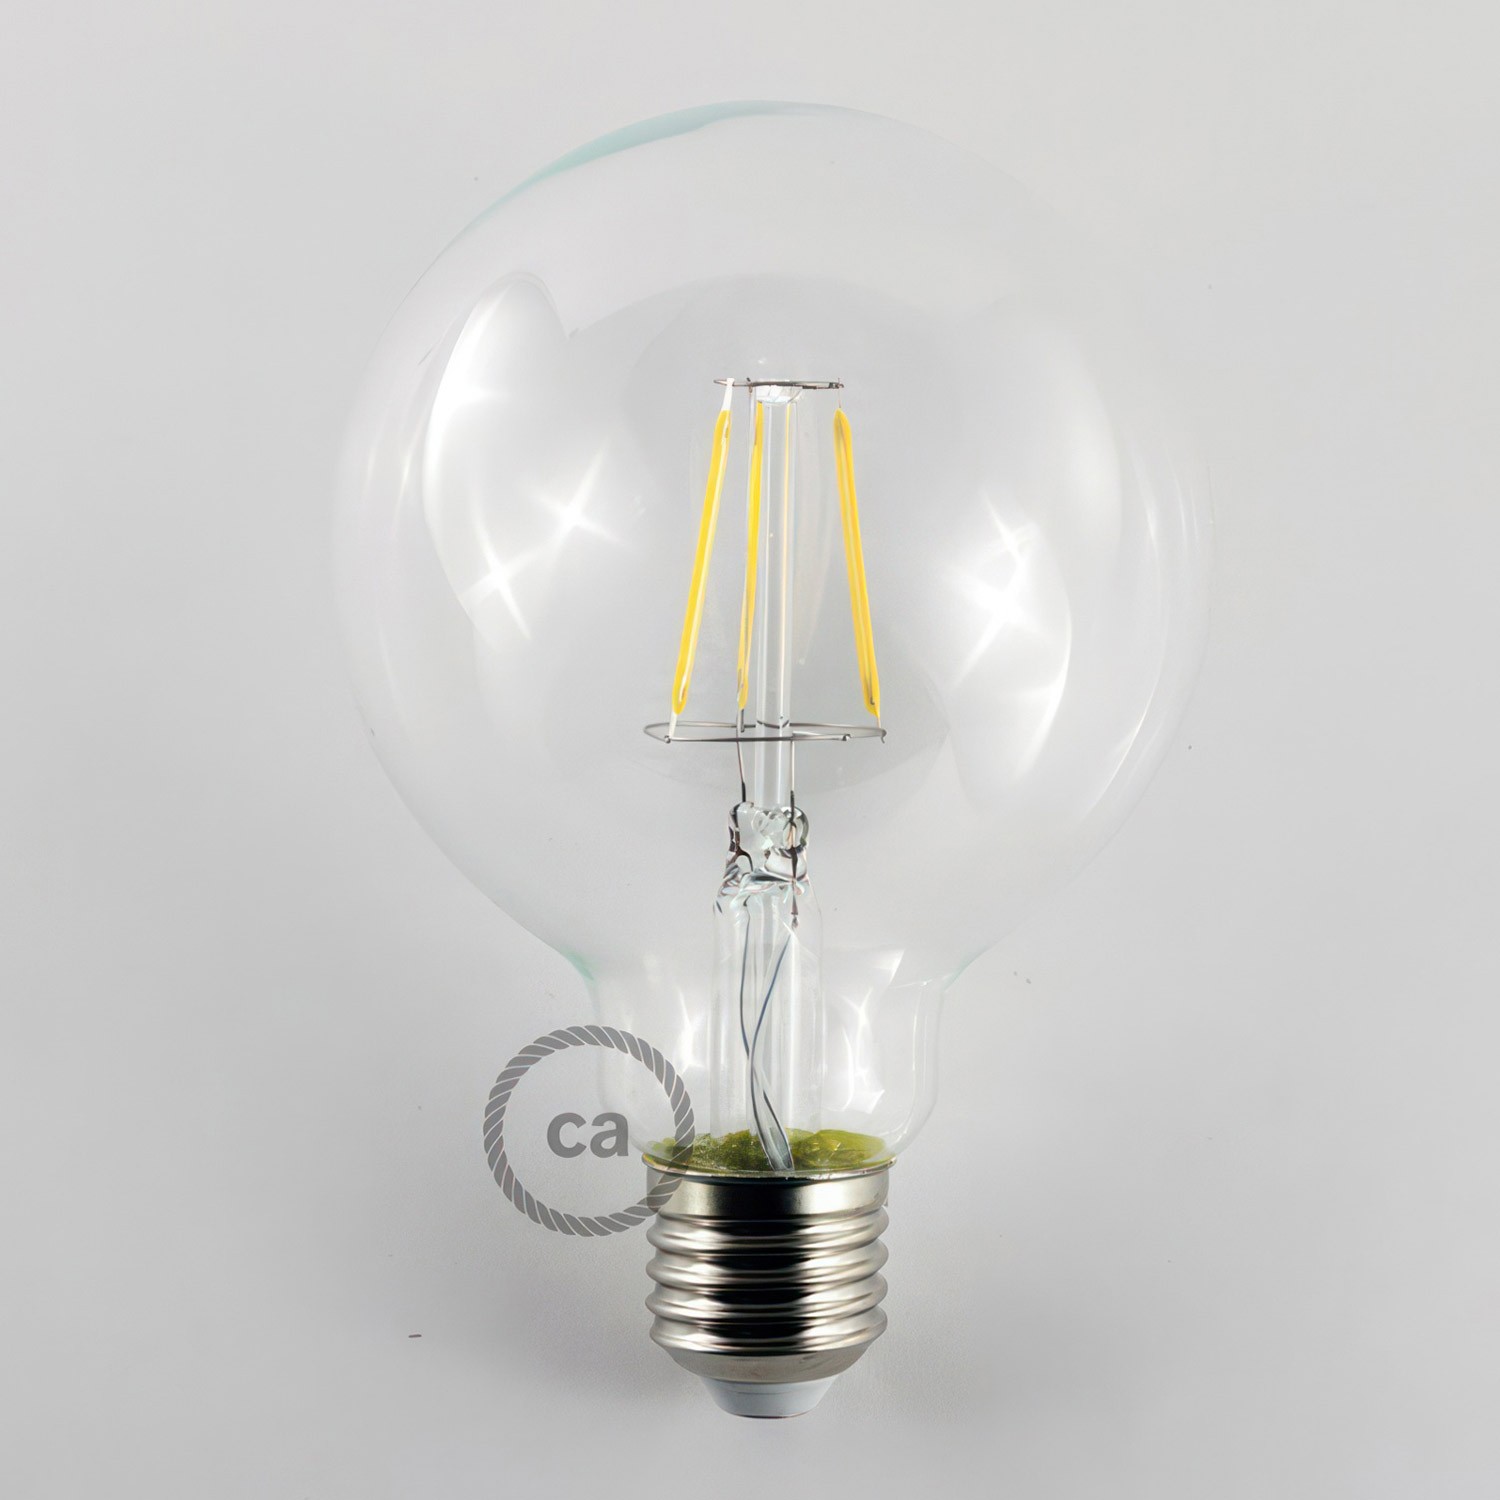 3 lichts-meervoudige hanglamp compleet met strijkijzersnoer en metalen afwerkingen